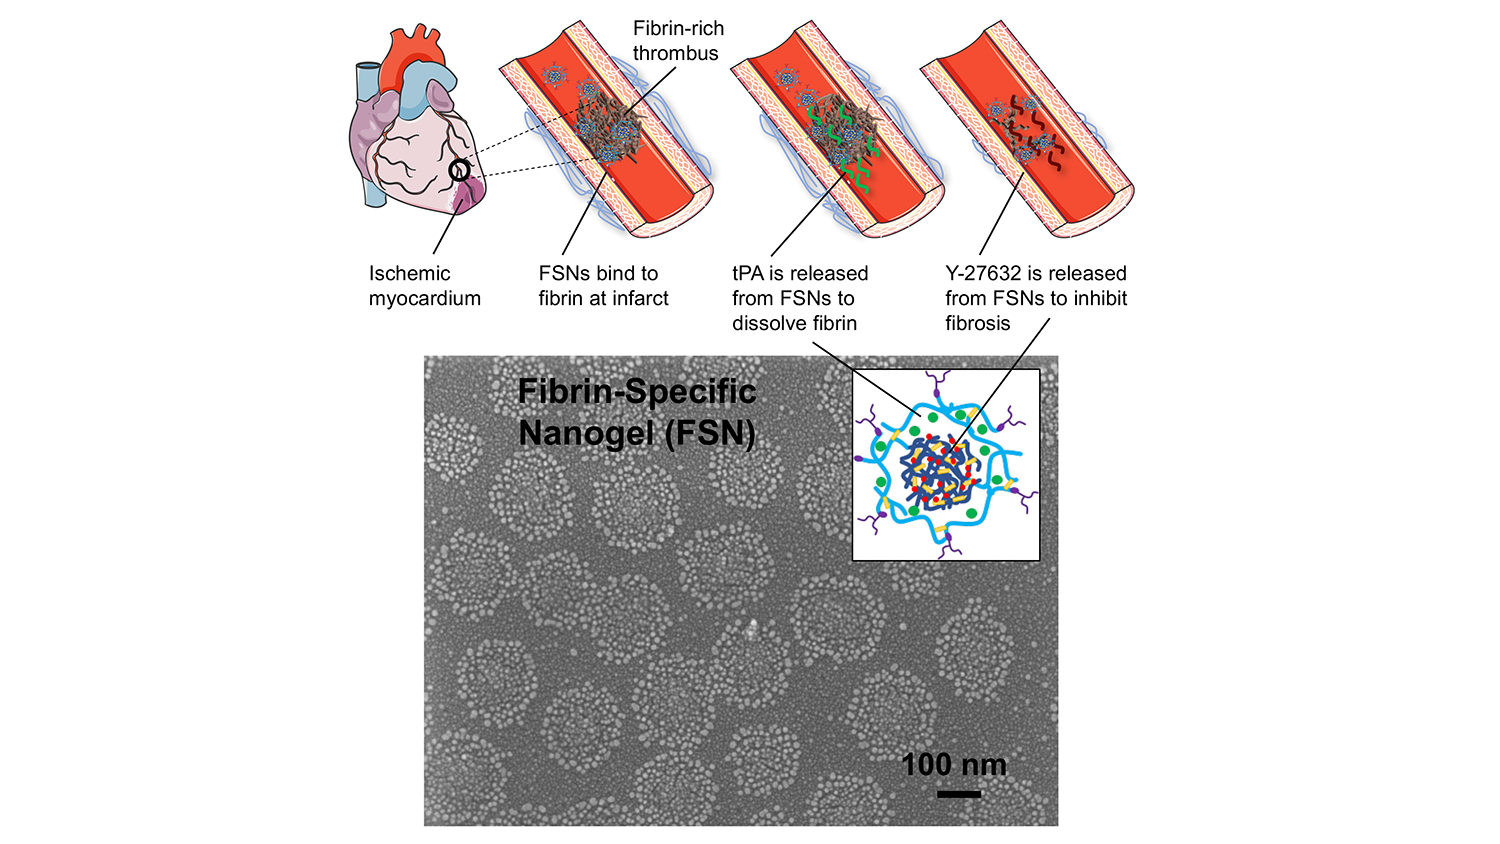 Fibrin-specific nanogel (FSN): FSNs bind to fibrin at infarct; tPA is released from FSNs to dissolve fibrin; Y-22632 is released from FSNs to inhibit fibrosis